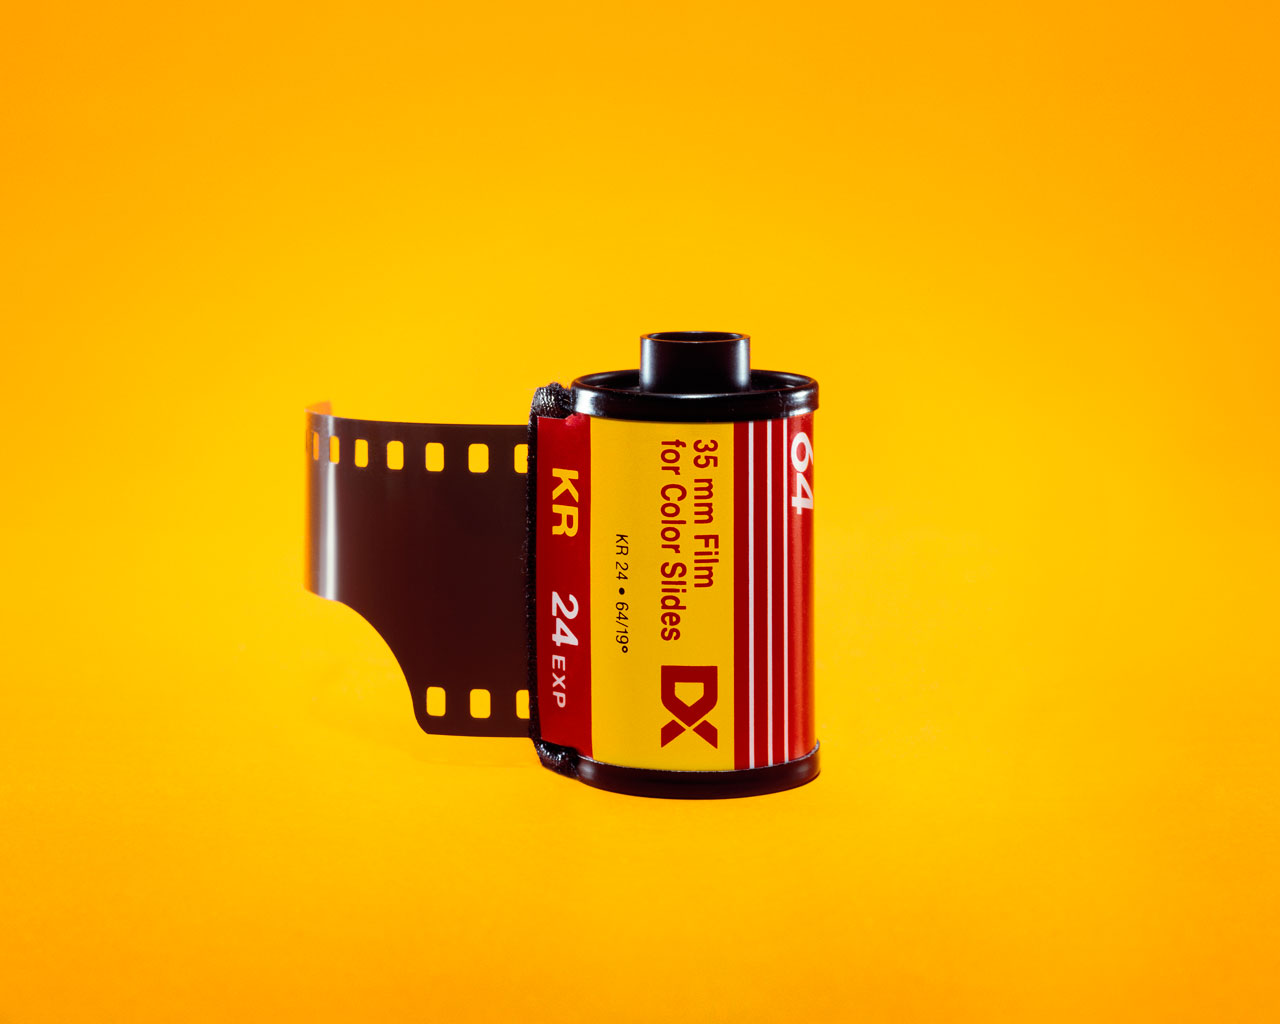 Kodak: "Cái chết" do những định hướng kinh doanh sai lầm 2